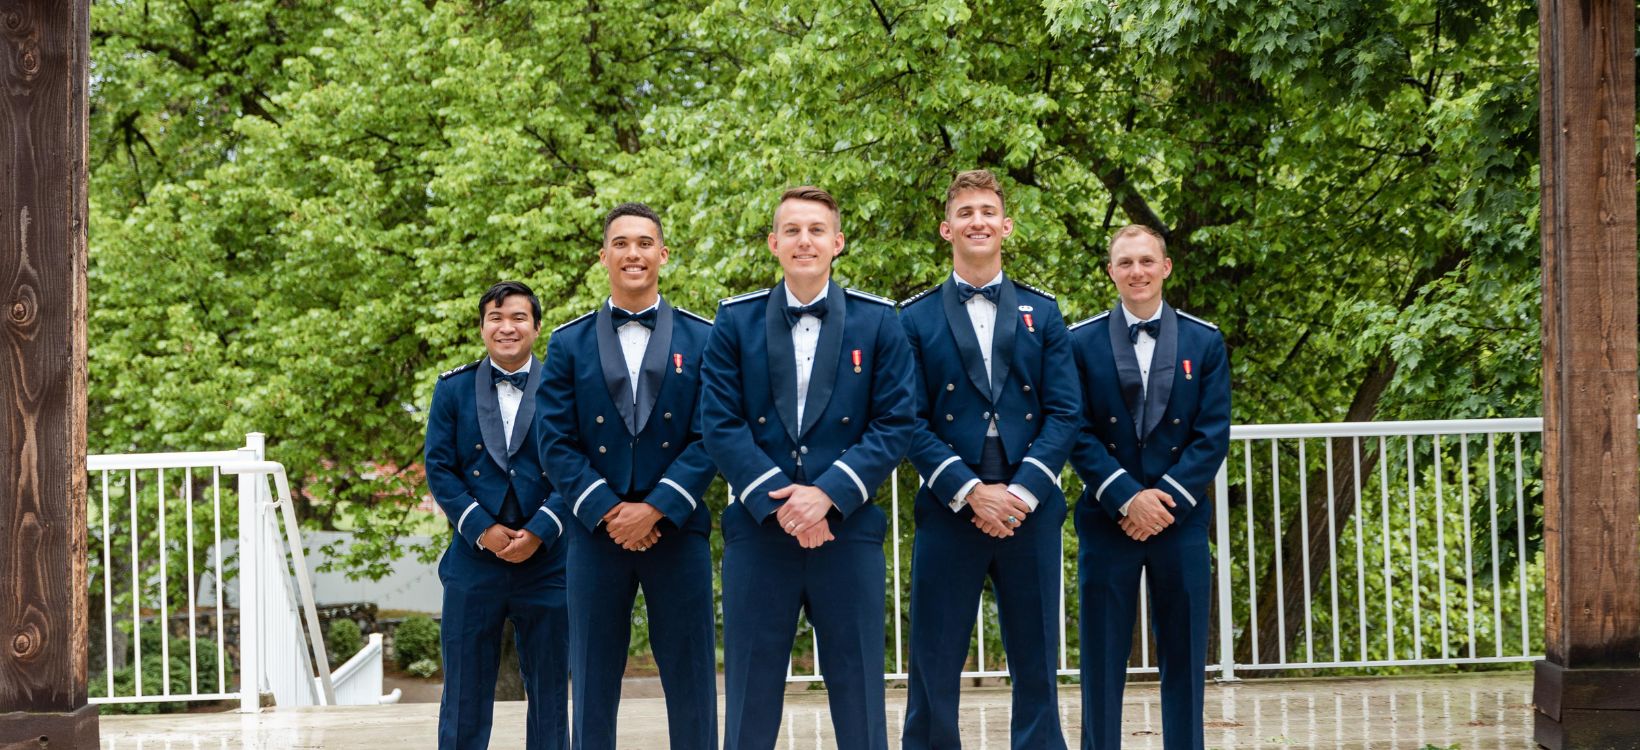 Military groomsmen photo